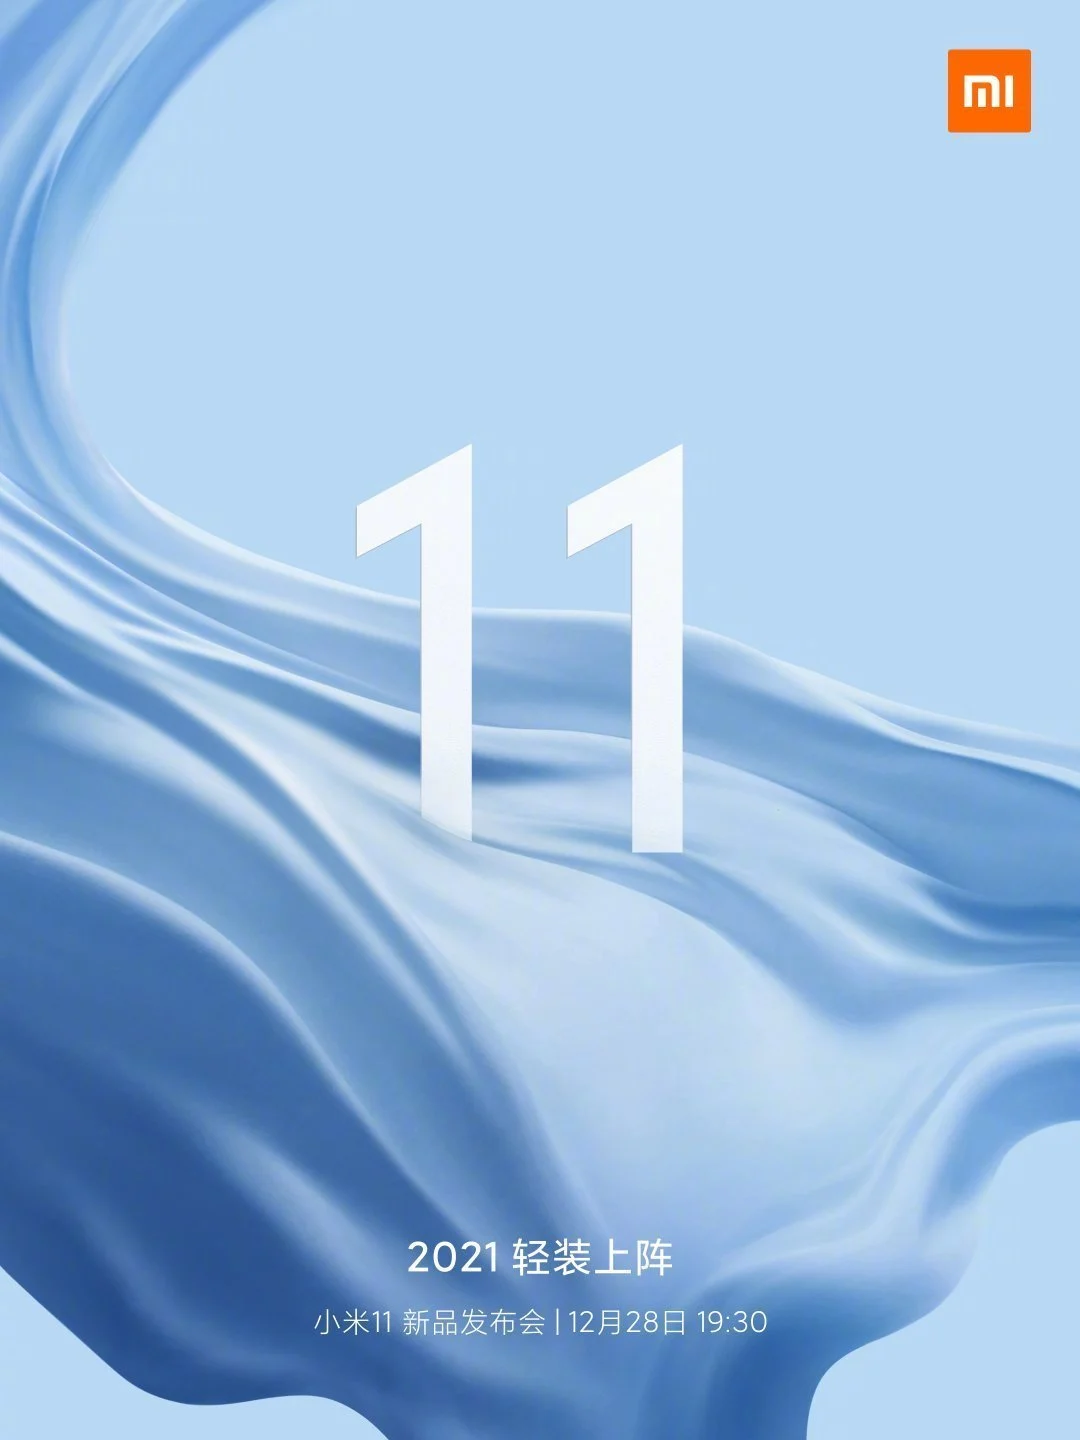 Дата запуска серии Xiaomi Mi 11 — 28 декабря (Xiaomi Mi 11 December 28 launch confirmed)